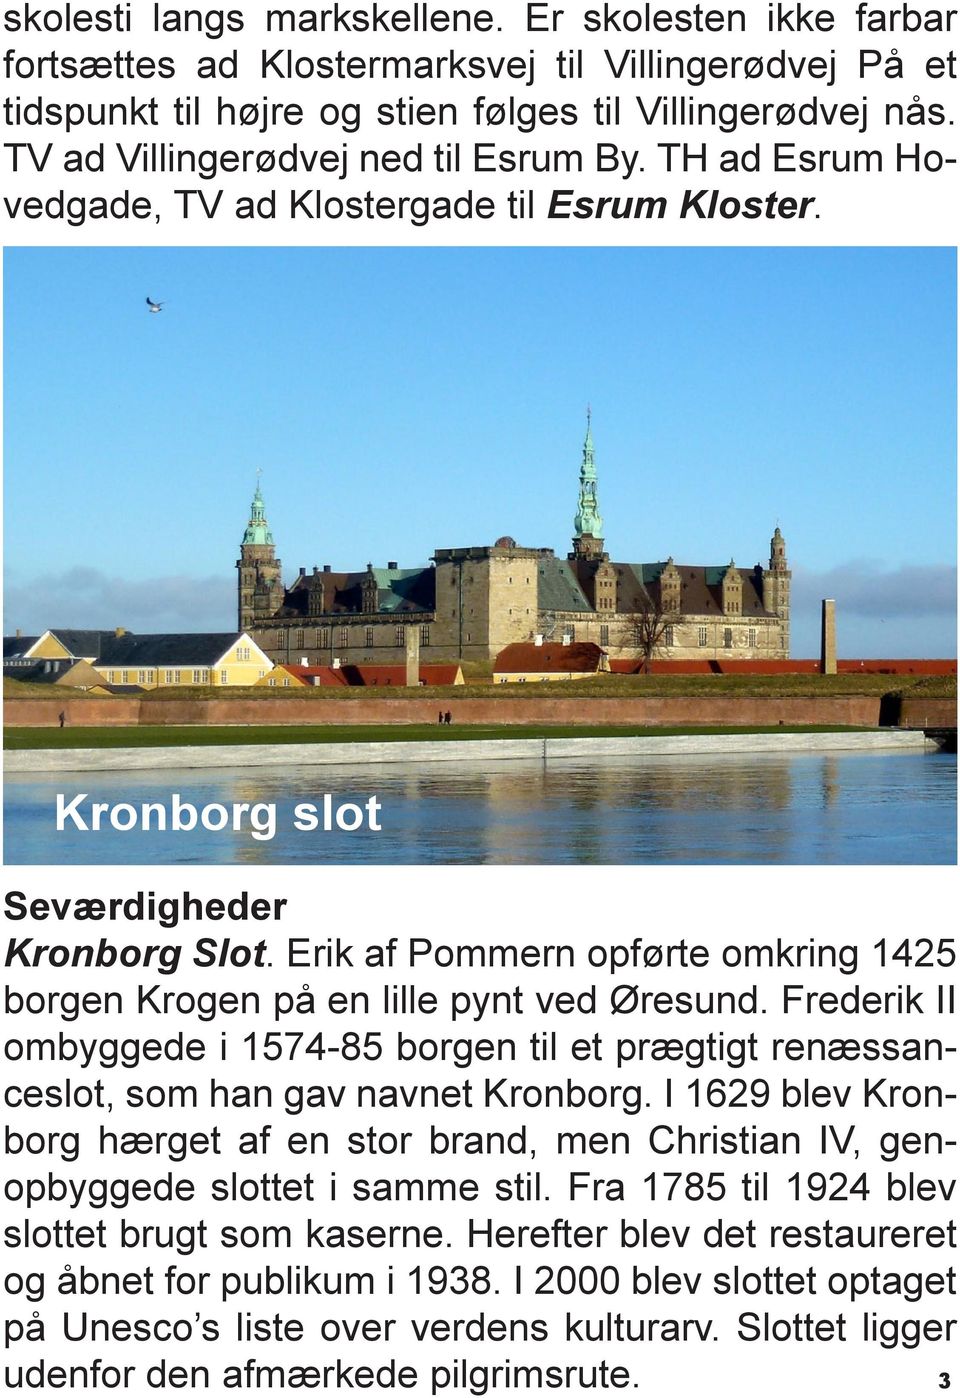 Erik af Pommern opførte omkring 1425 borgen Krogen på en lille pynt ved Øresund. Frederik II ombyggede i 1574-85 borgen til et prægtigt renæssanceslot, som han gav navnet Kronborg.